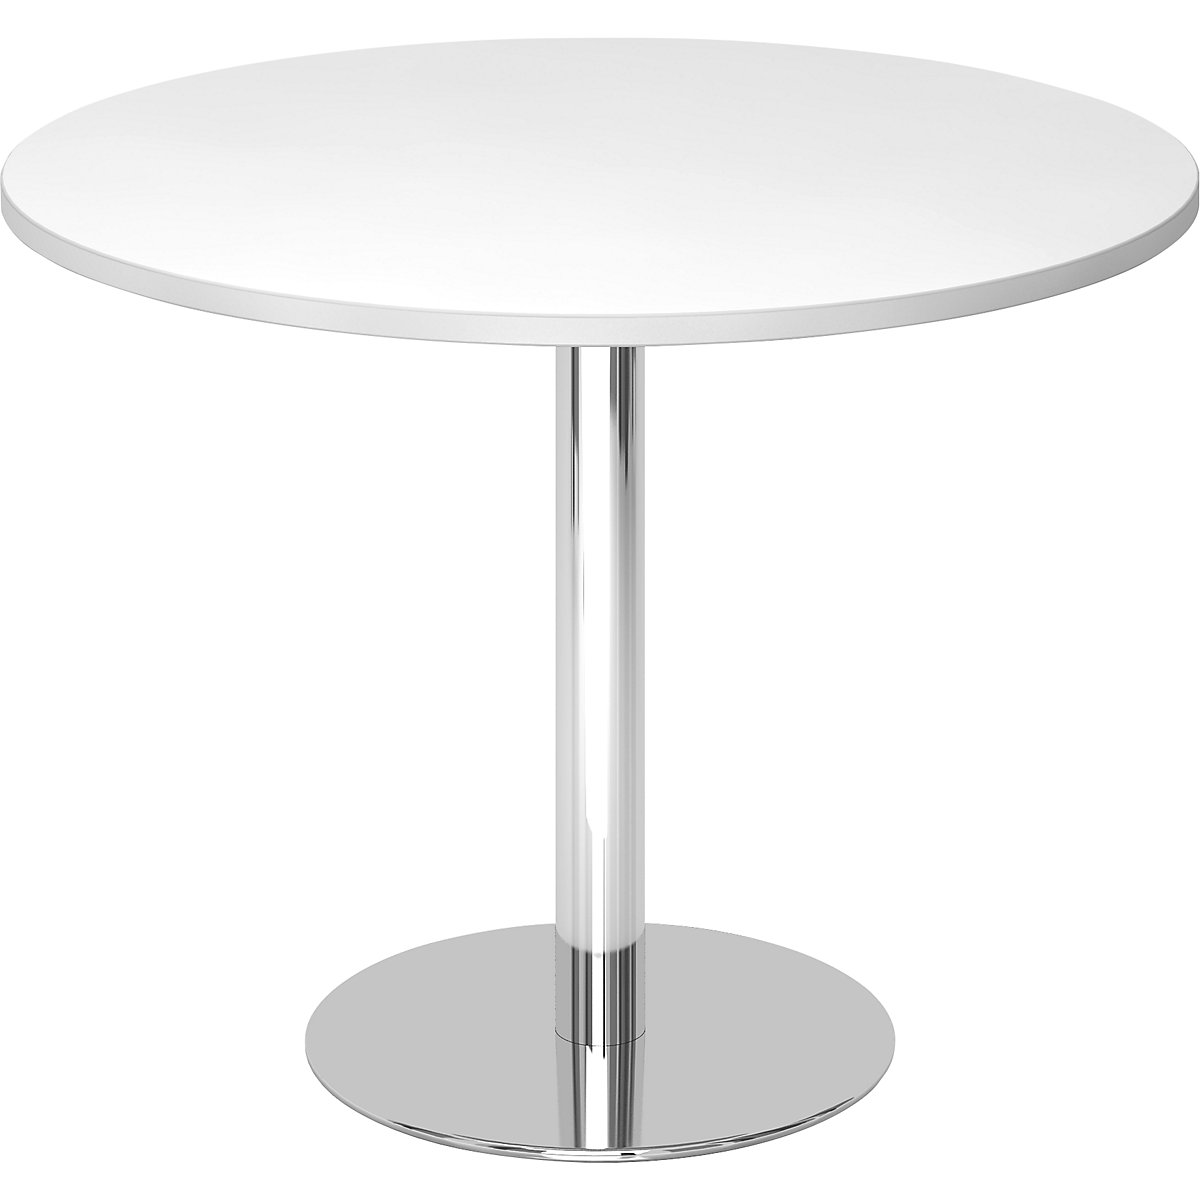 Tárgyalóasztal, Ø 1000 mm, 755 mm magas, krómozott váz, fehér asztallap